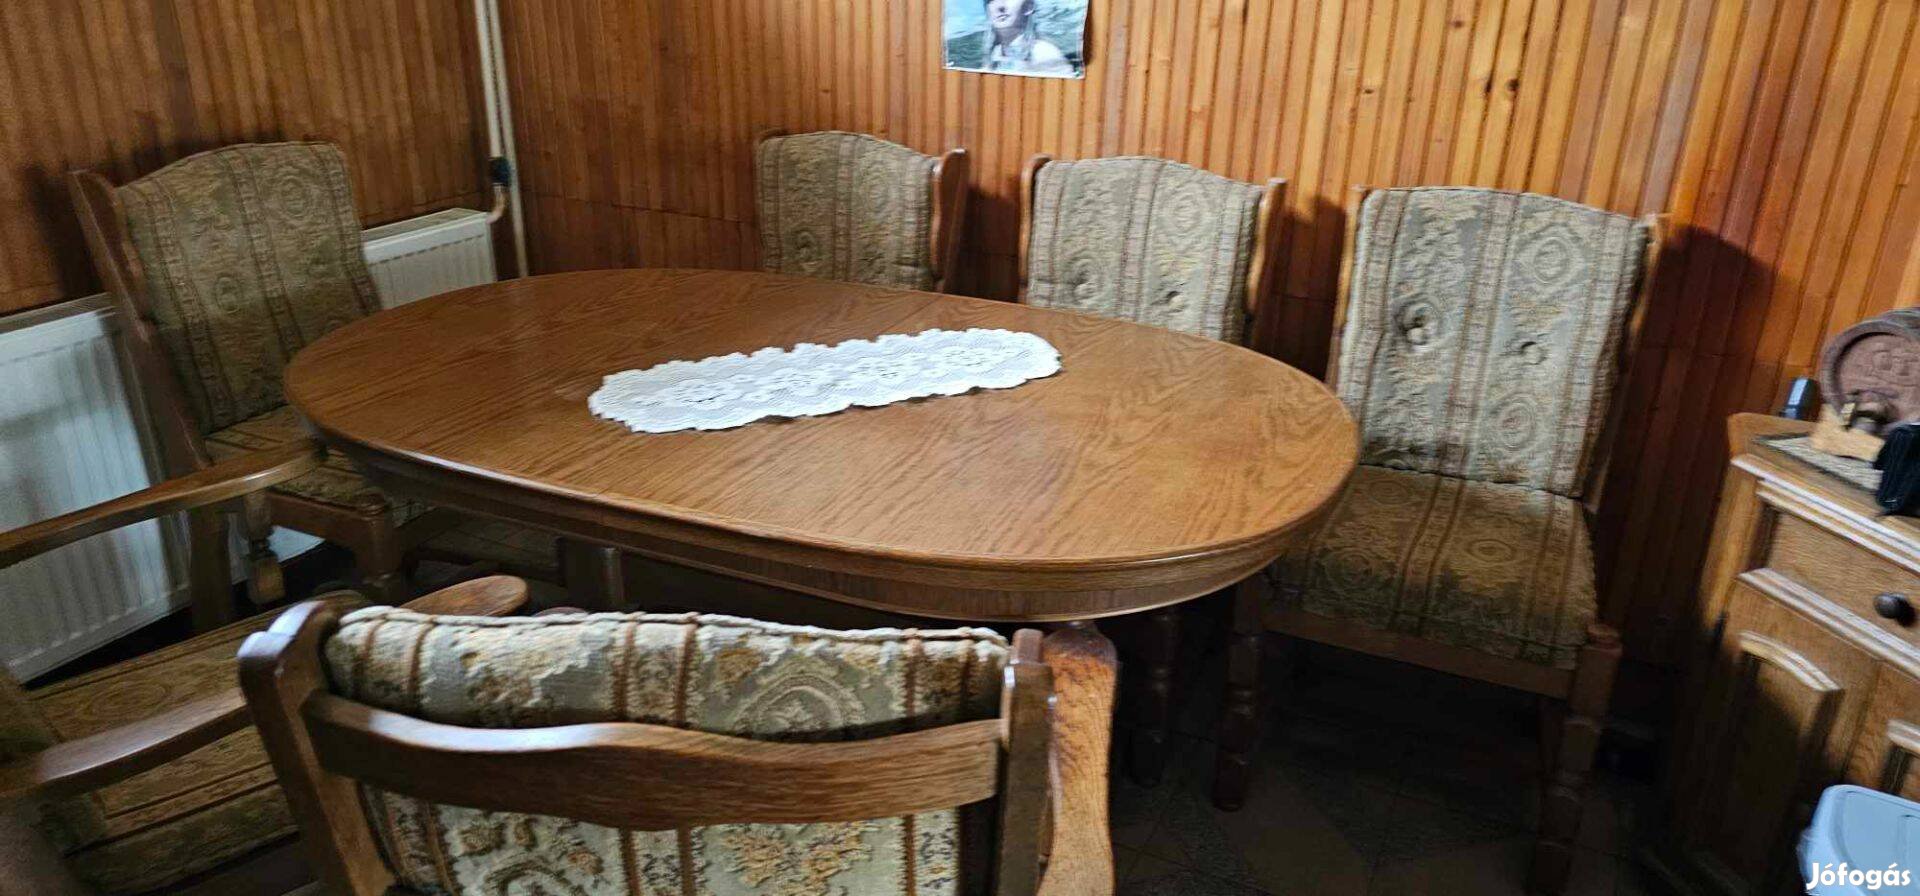 Eladó tölgyfa asztal székekkel